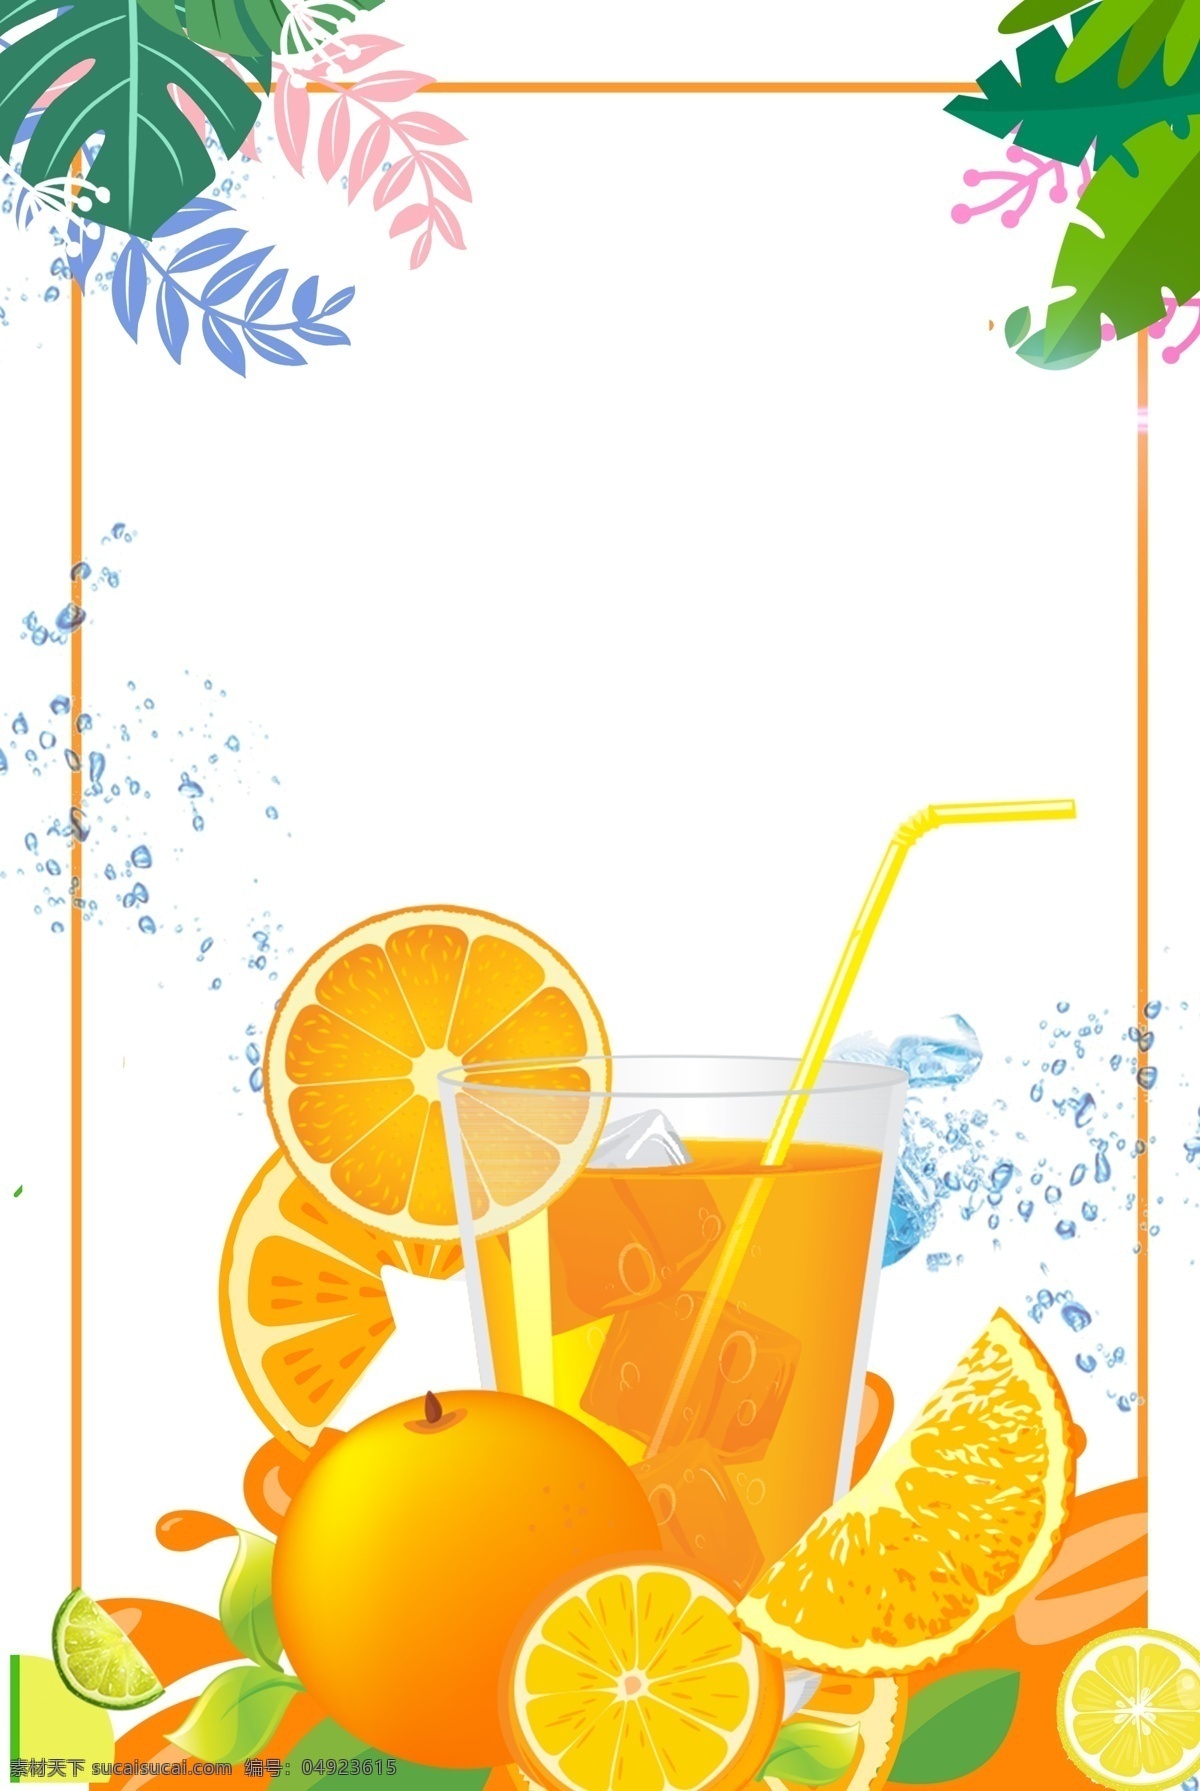 夏日 柠檬 柚子 茶 背景 场景 卡通 手绘 清新 自然 主题